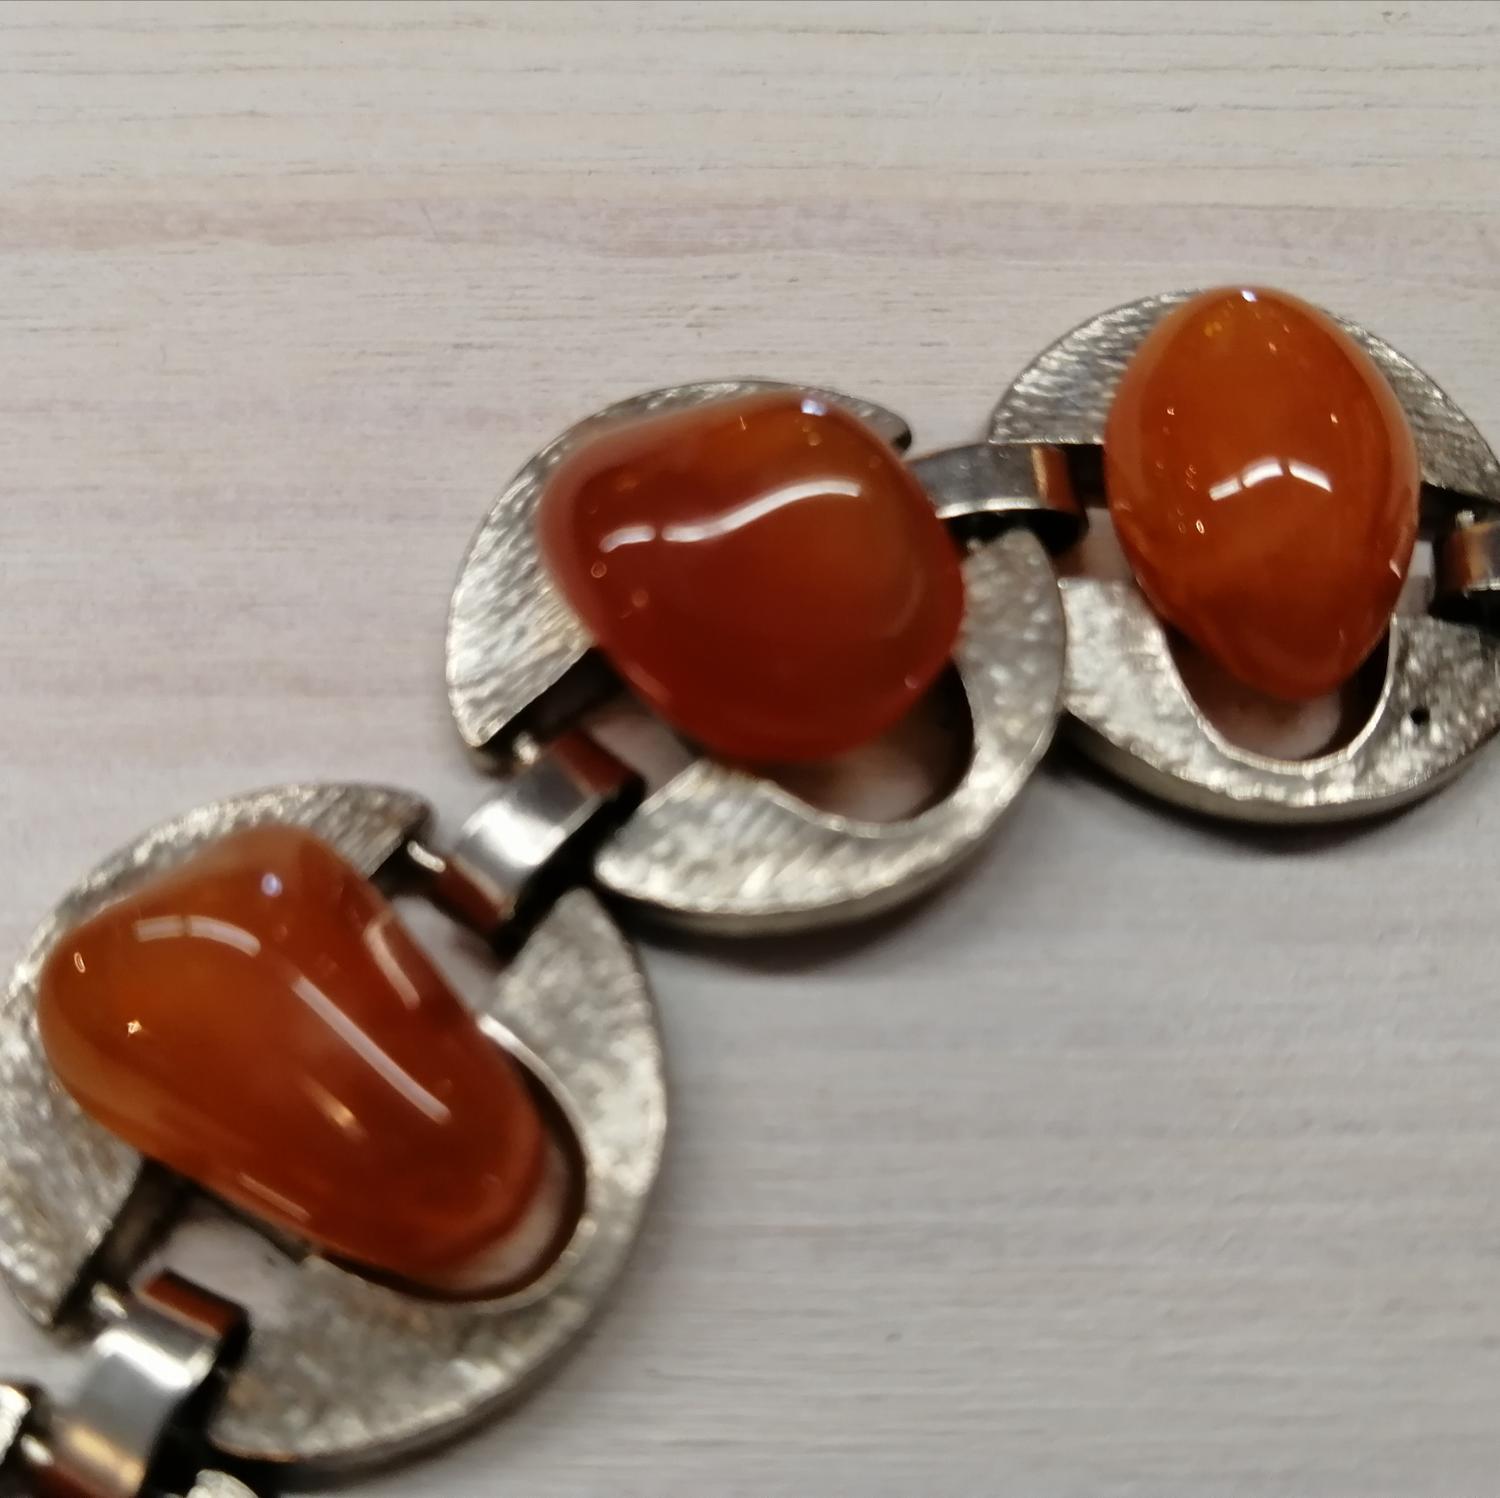 Vintage bijouteri armband silverf cirklar länkar med orange stenar i mitten